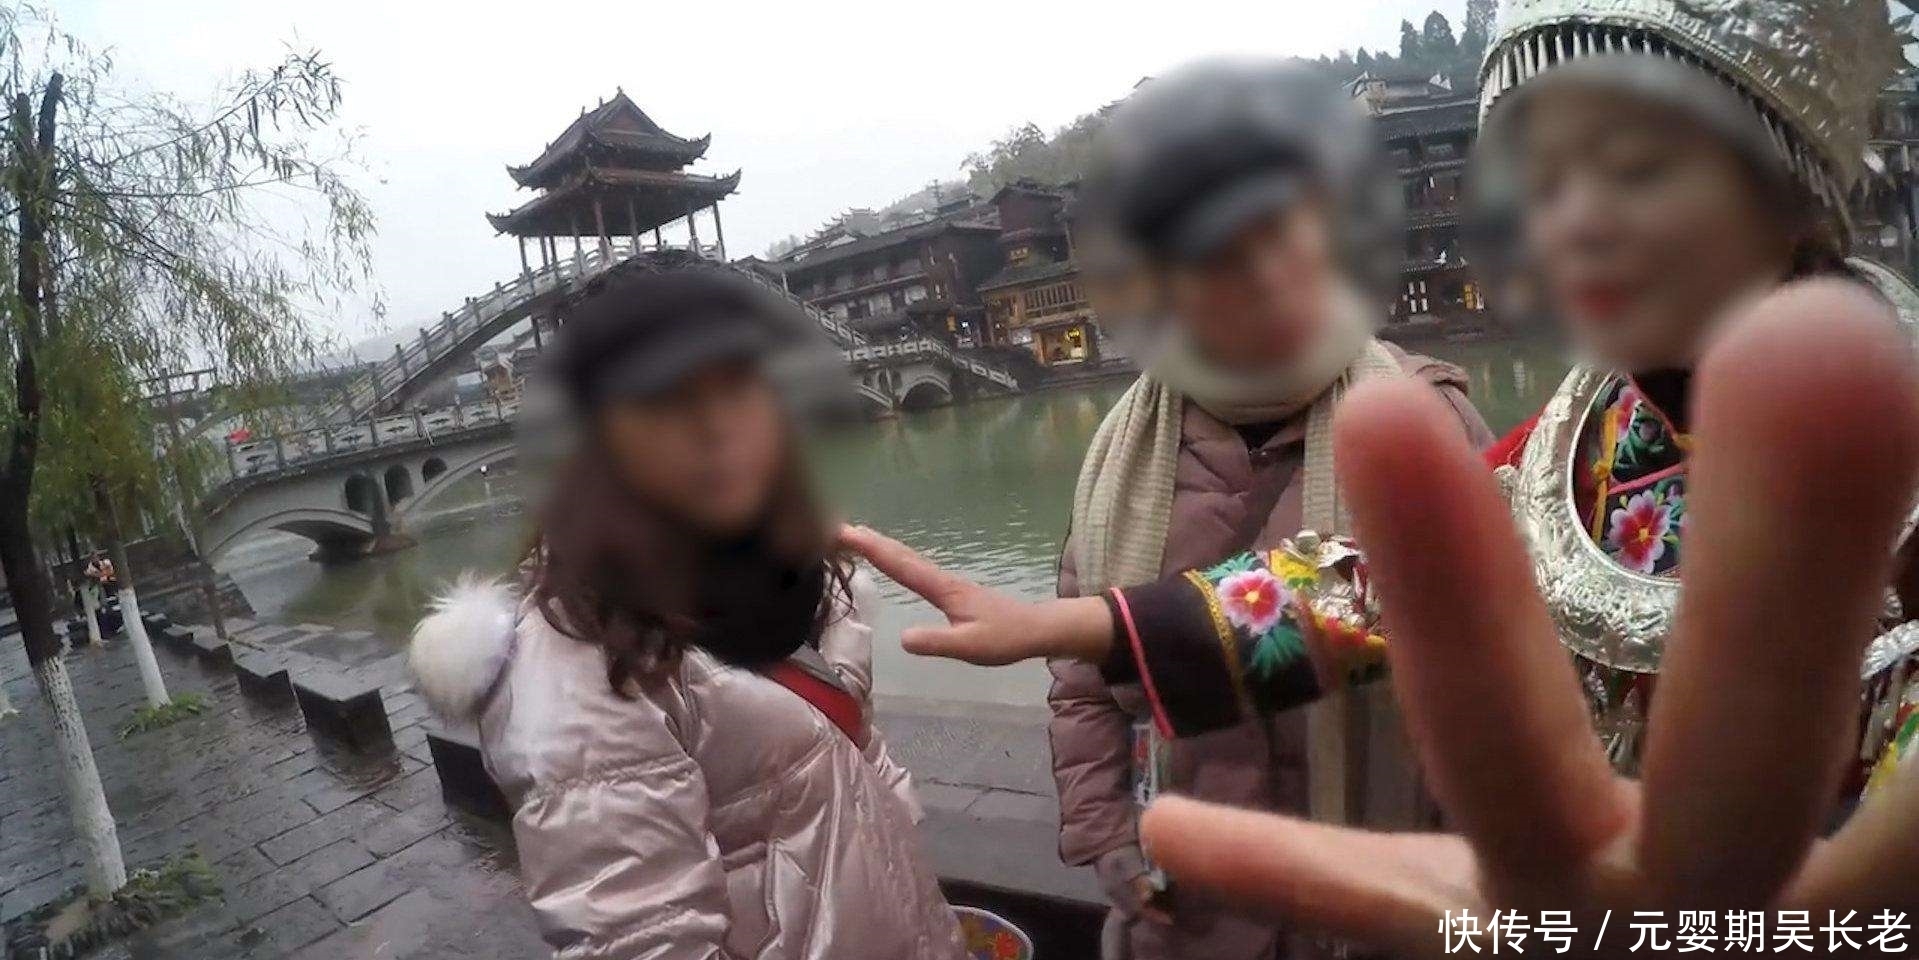 游客凤凰古城租衣服被禁止自拍，当地官方居然选择这样处罚！